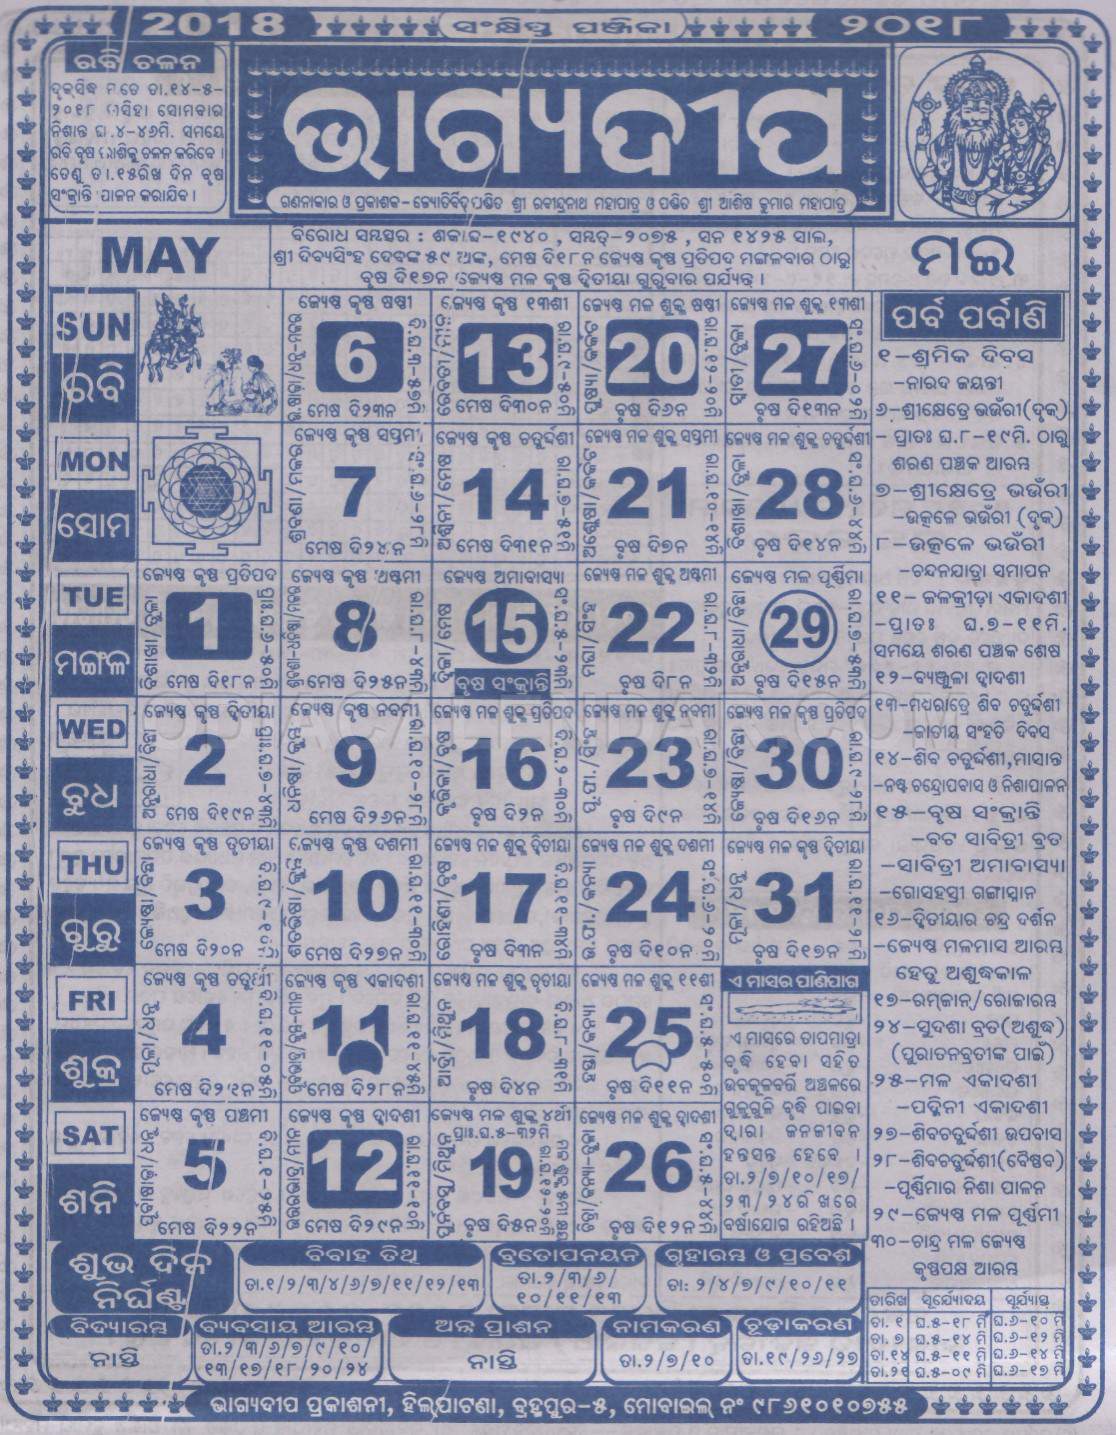 Bhagyadeep Calendar may 2018